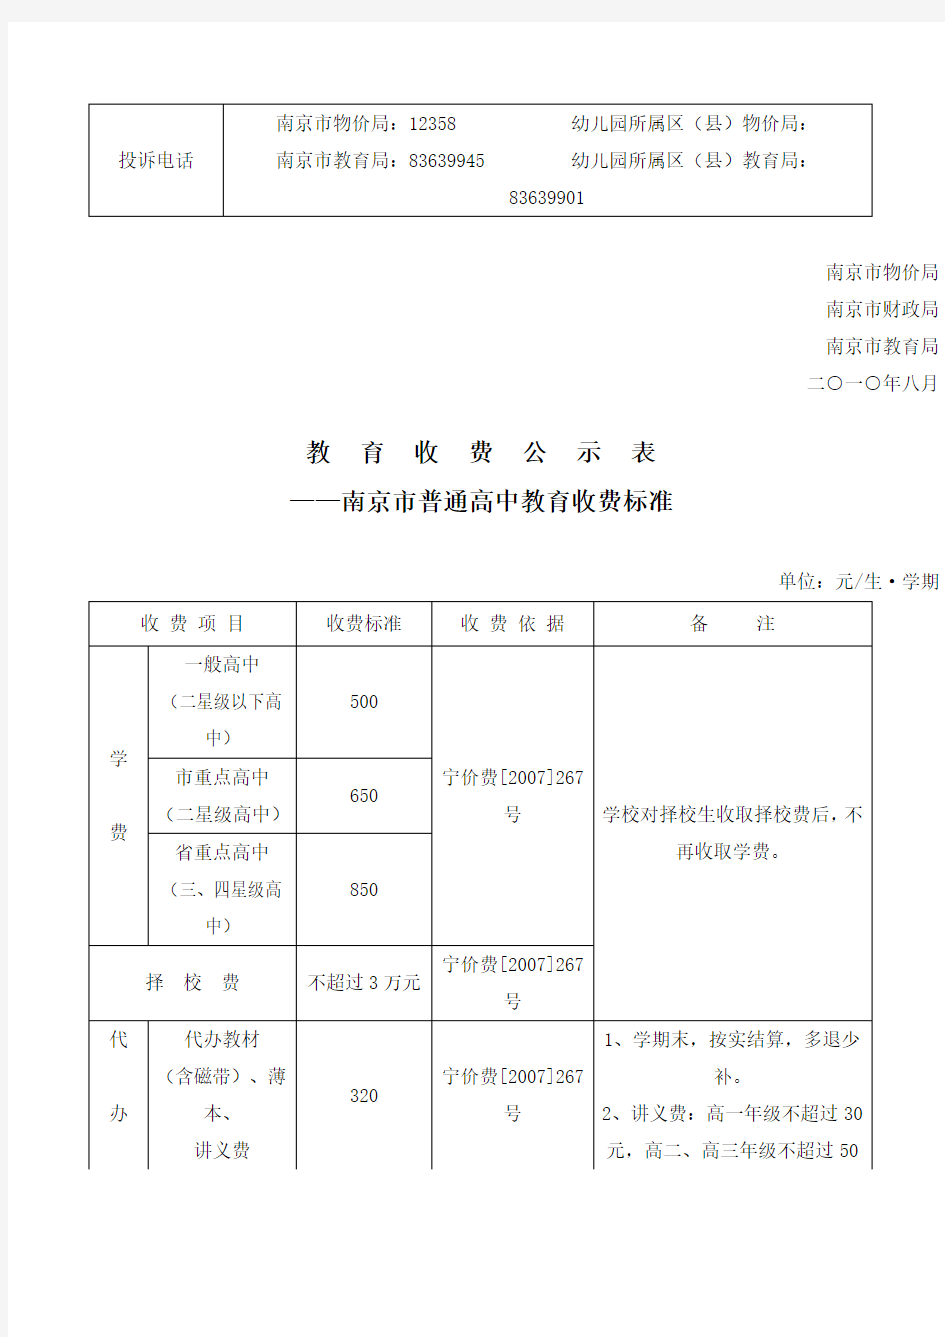 南京市幼儿园所教育收费公示标准表